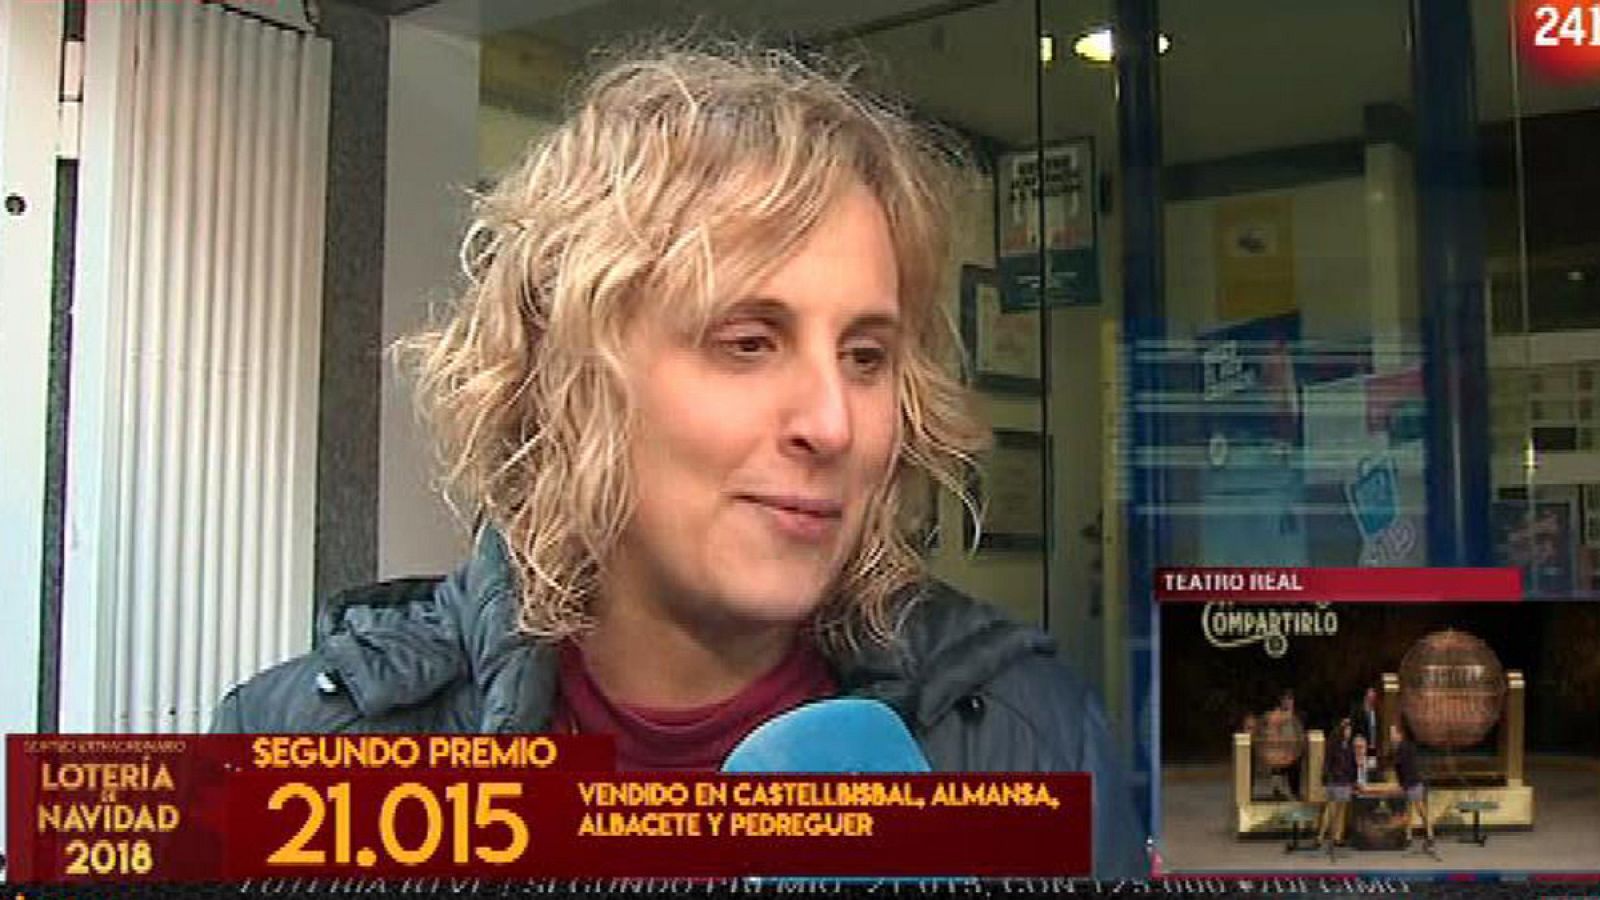 La Lotería de Navidad 2018 ha sonreído a la provincia de Barcelona. Pérsida, que regenta una administración de loterías en la localidad catalana de Castellbisbal, ha declarado a RTVE después de haber repartido décimos del número 21.015, agraciado con